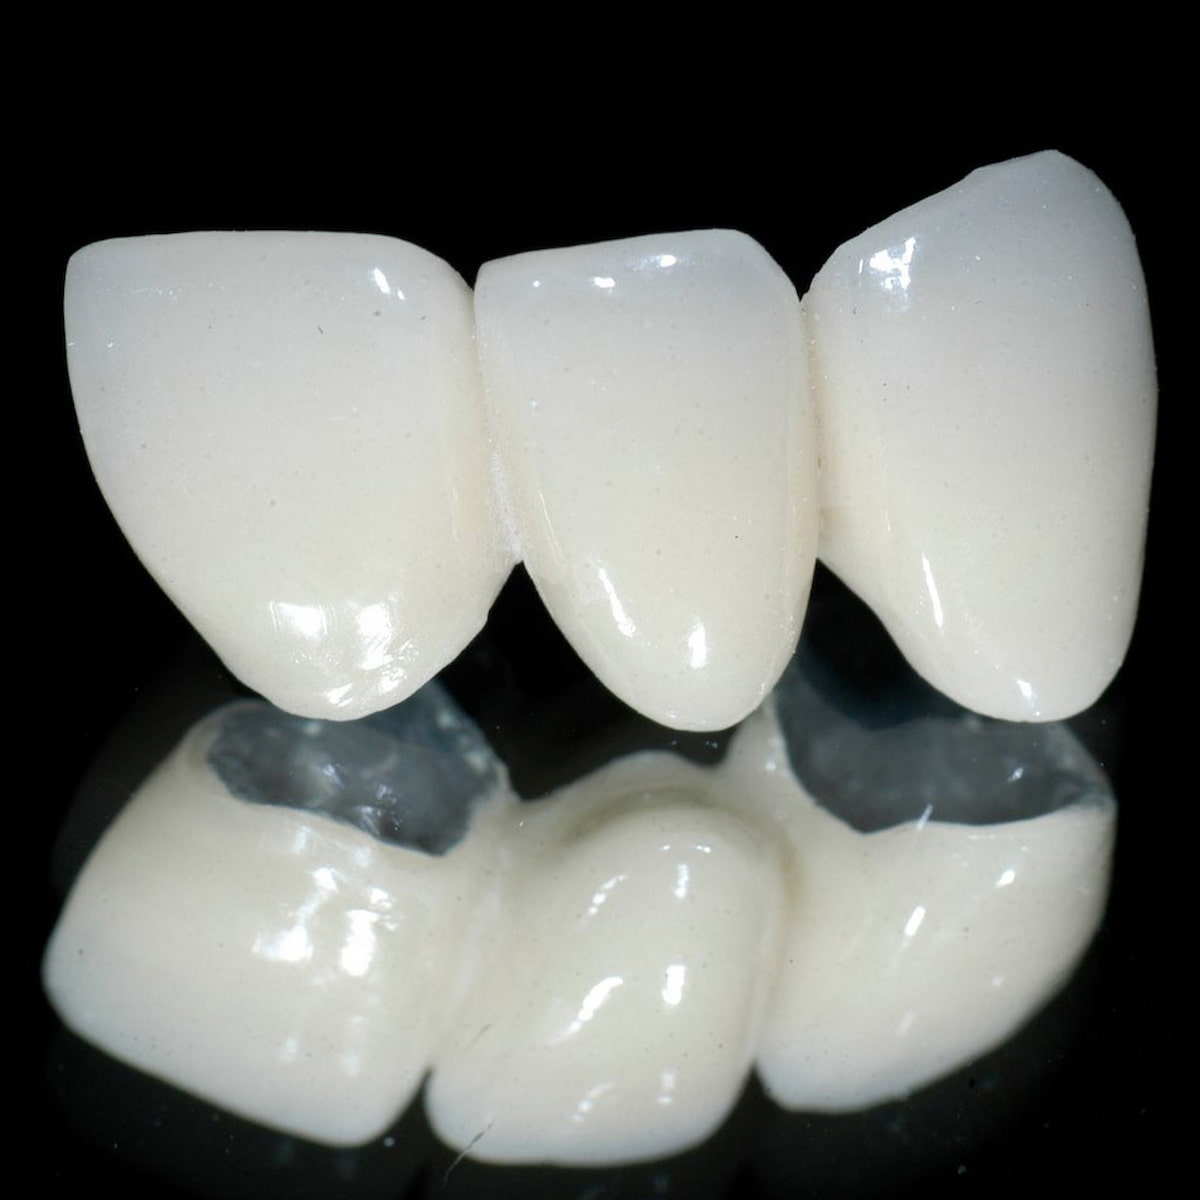 Răng toàn sứ có tương hợp sinh học tốt, trông gần giống như răng thật